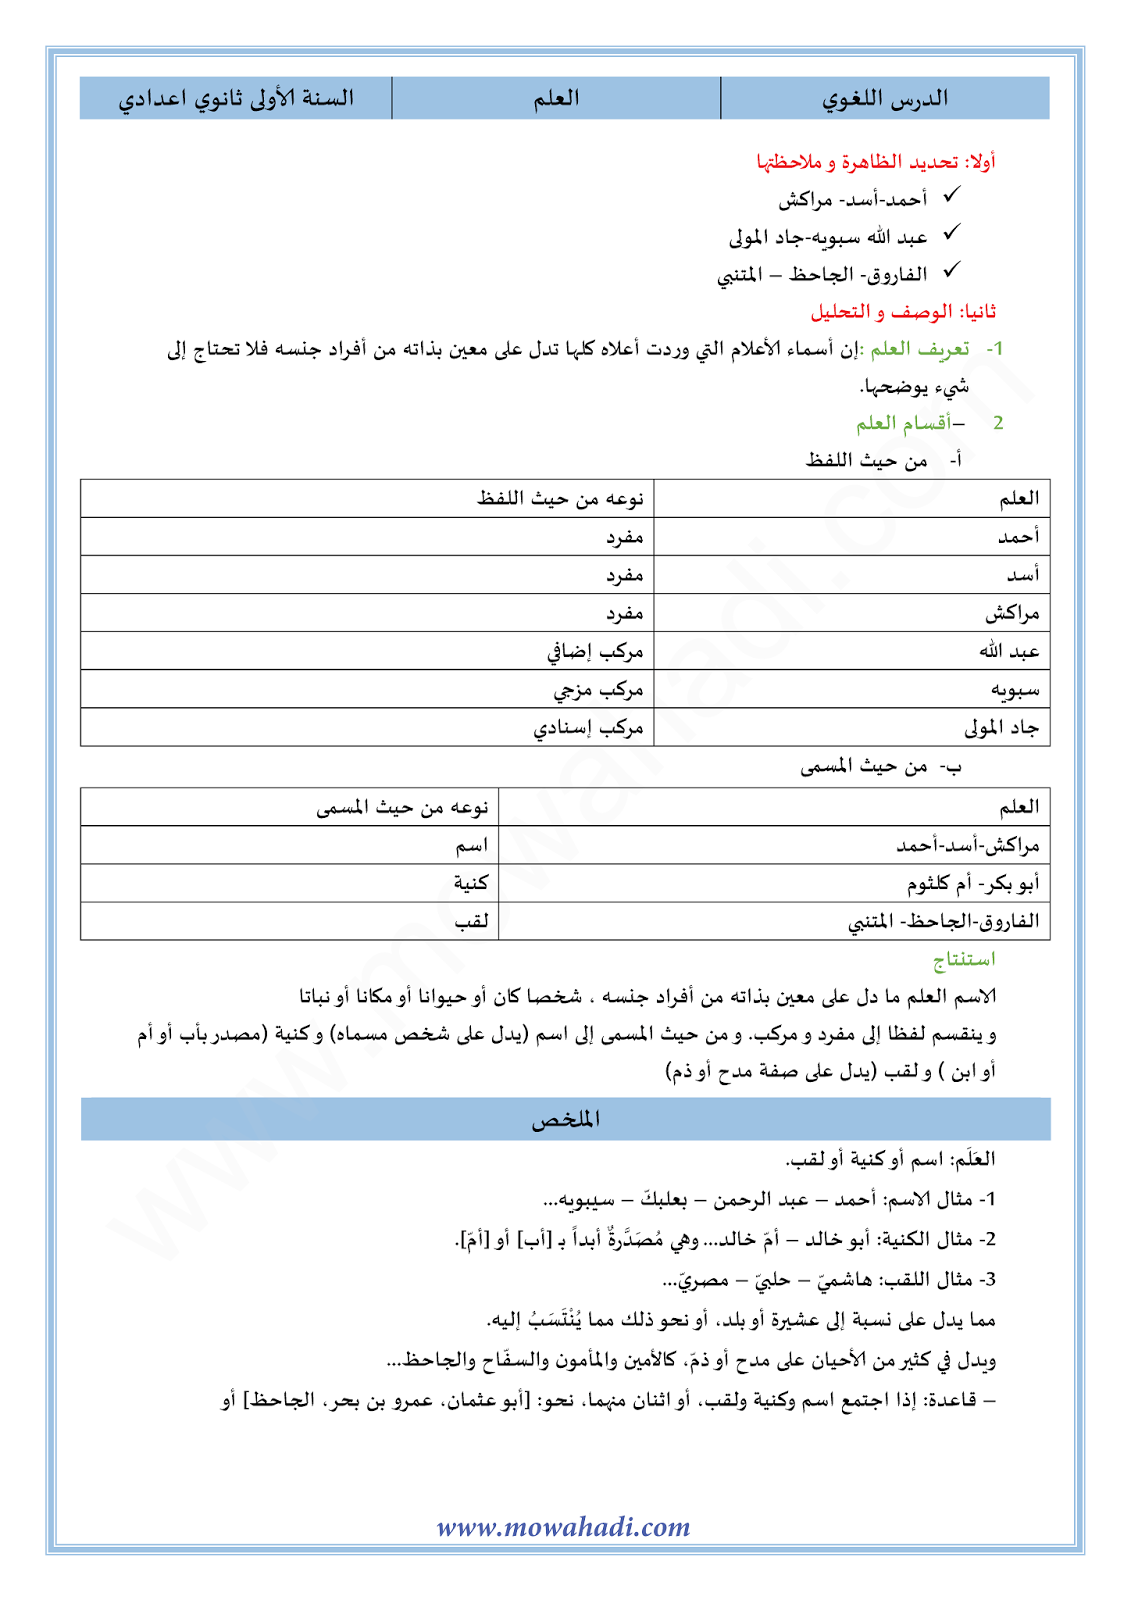 الدرس اللغوي العلم للسنة الأولى اعدادي في مادة اللغة العربية 13-cours-dars-loghawi1_001